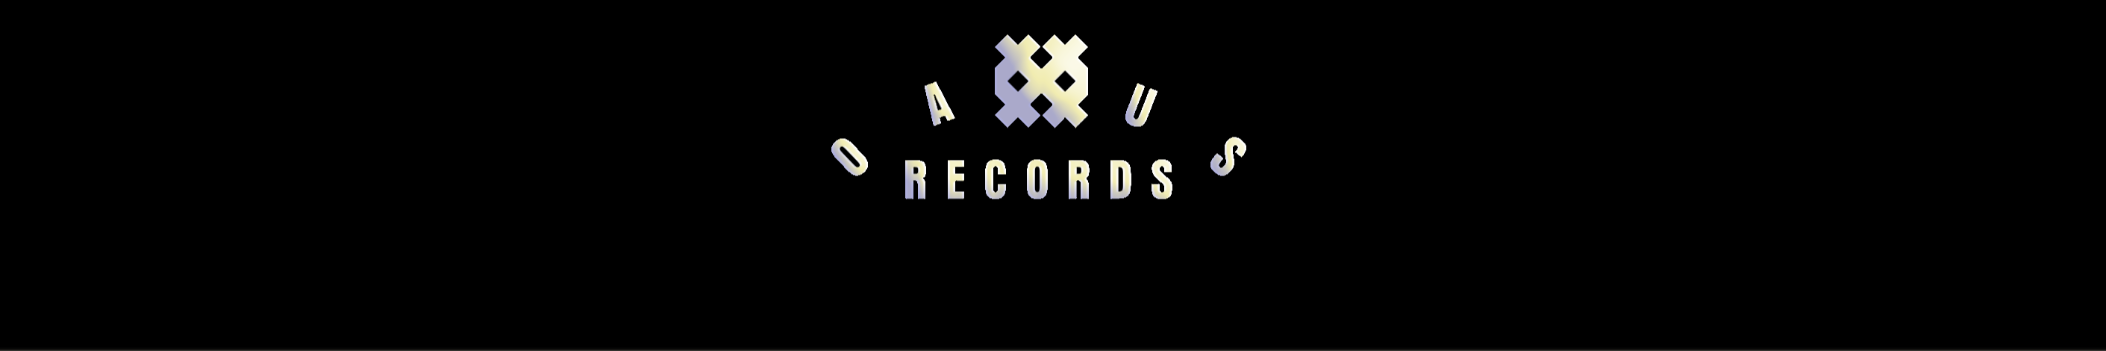 OAXUS Records